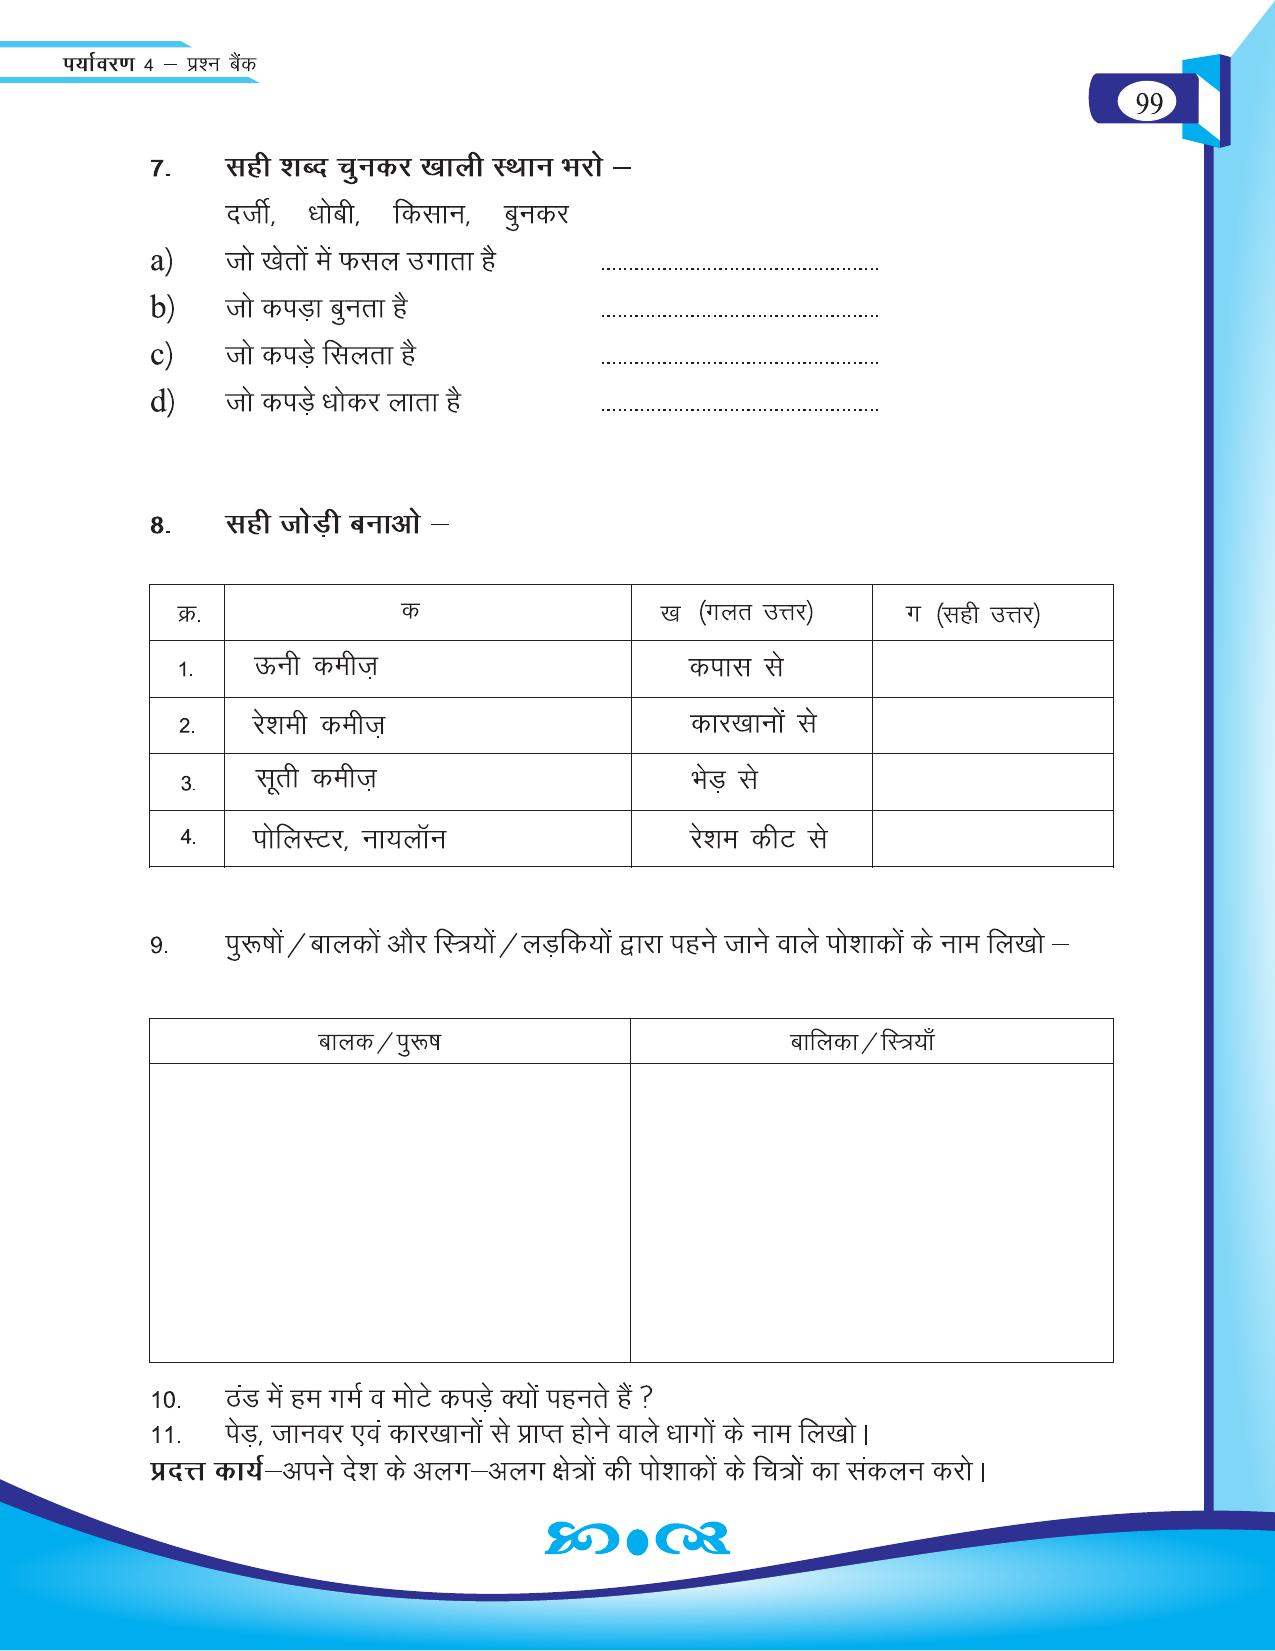 Chhattisgarh Board Class 4 EVS Question Bank 2015-16 - Page 28